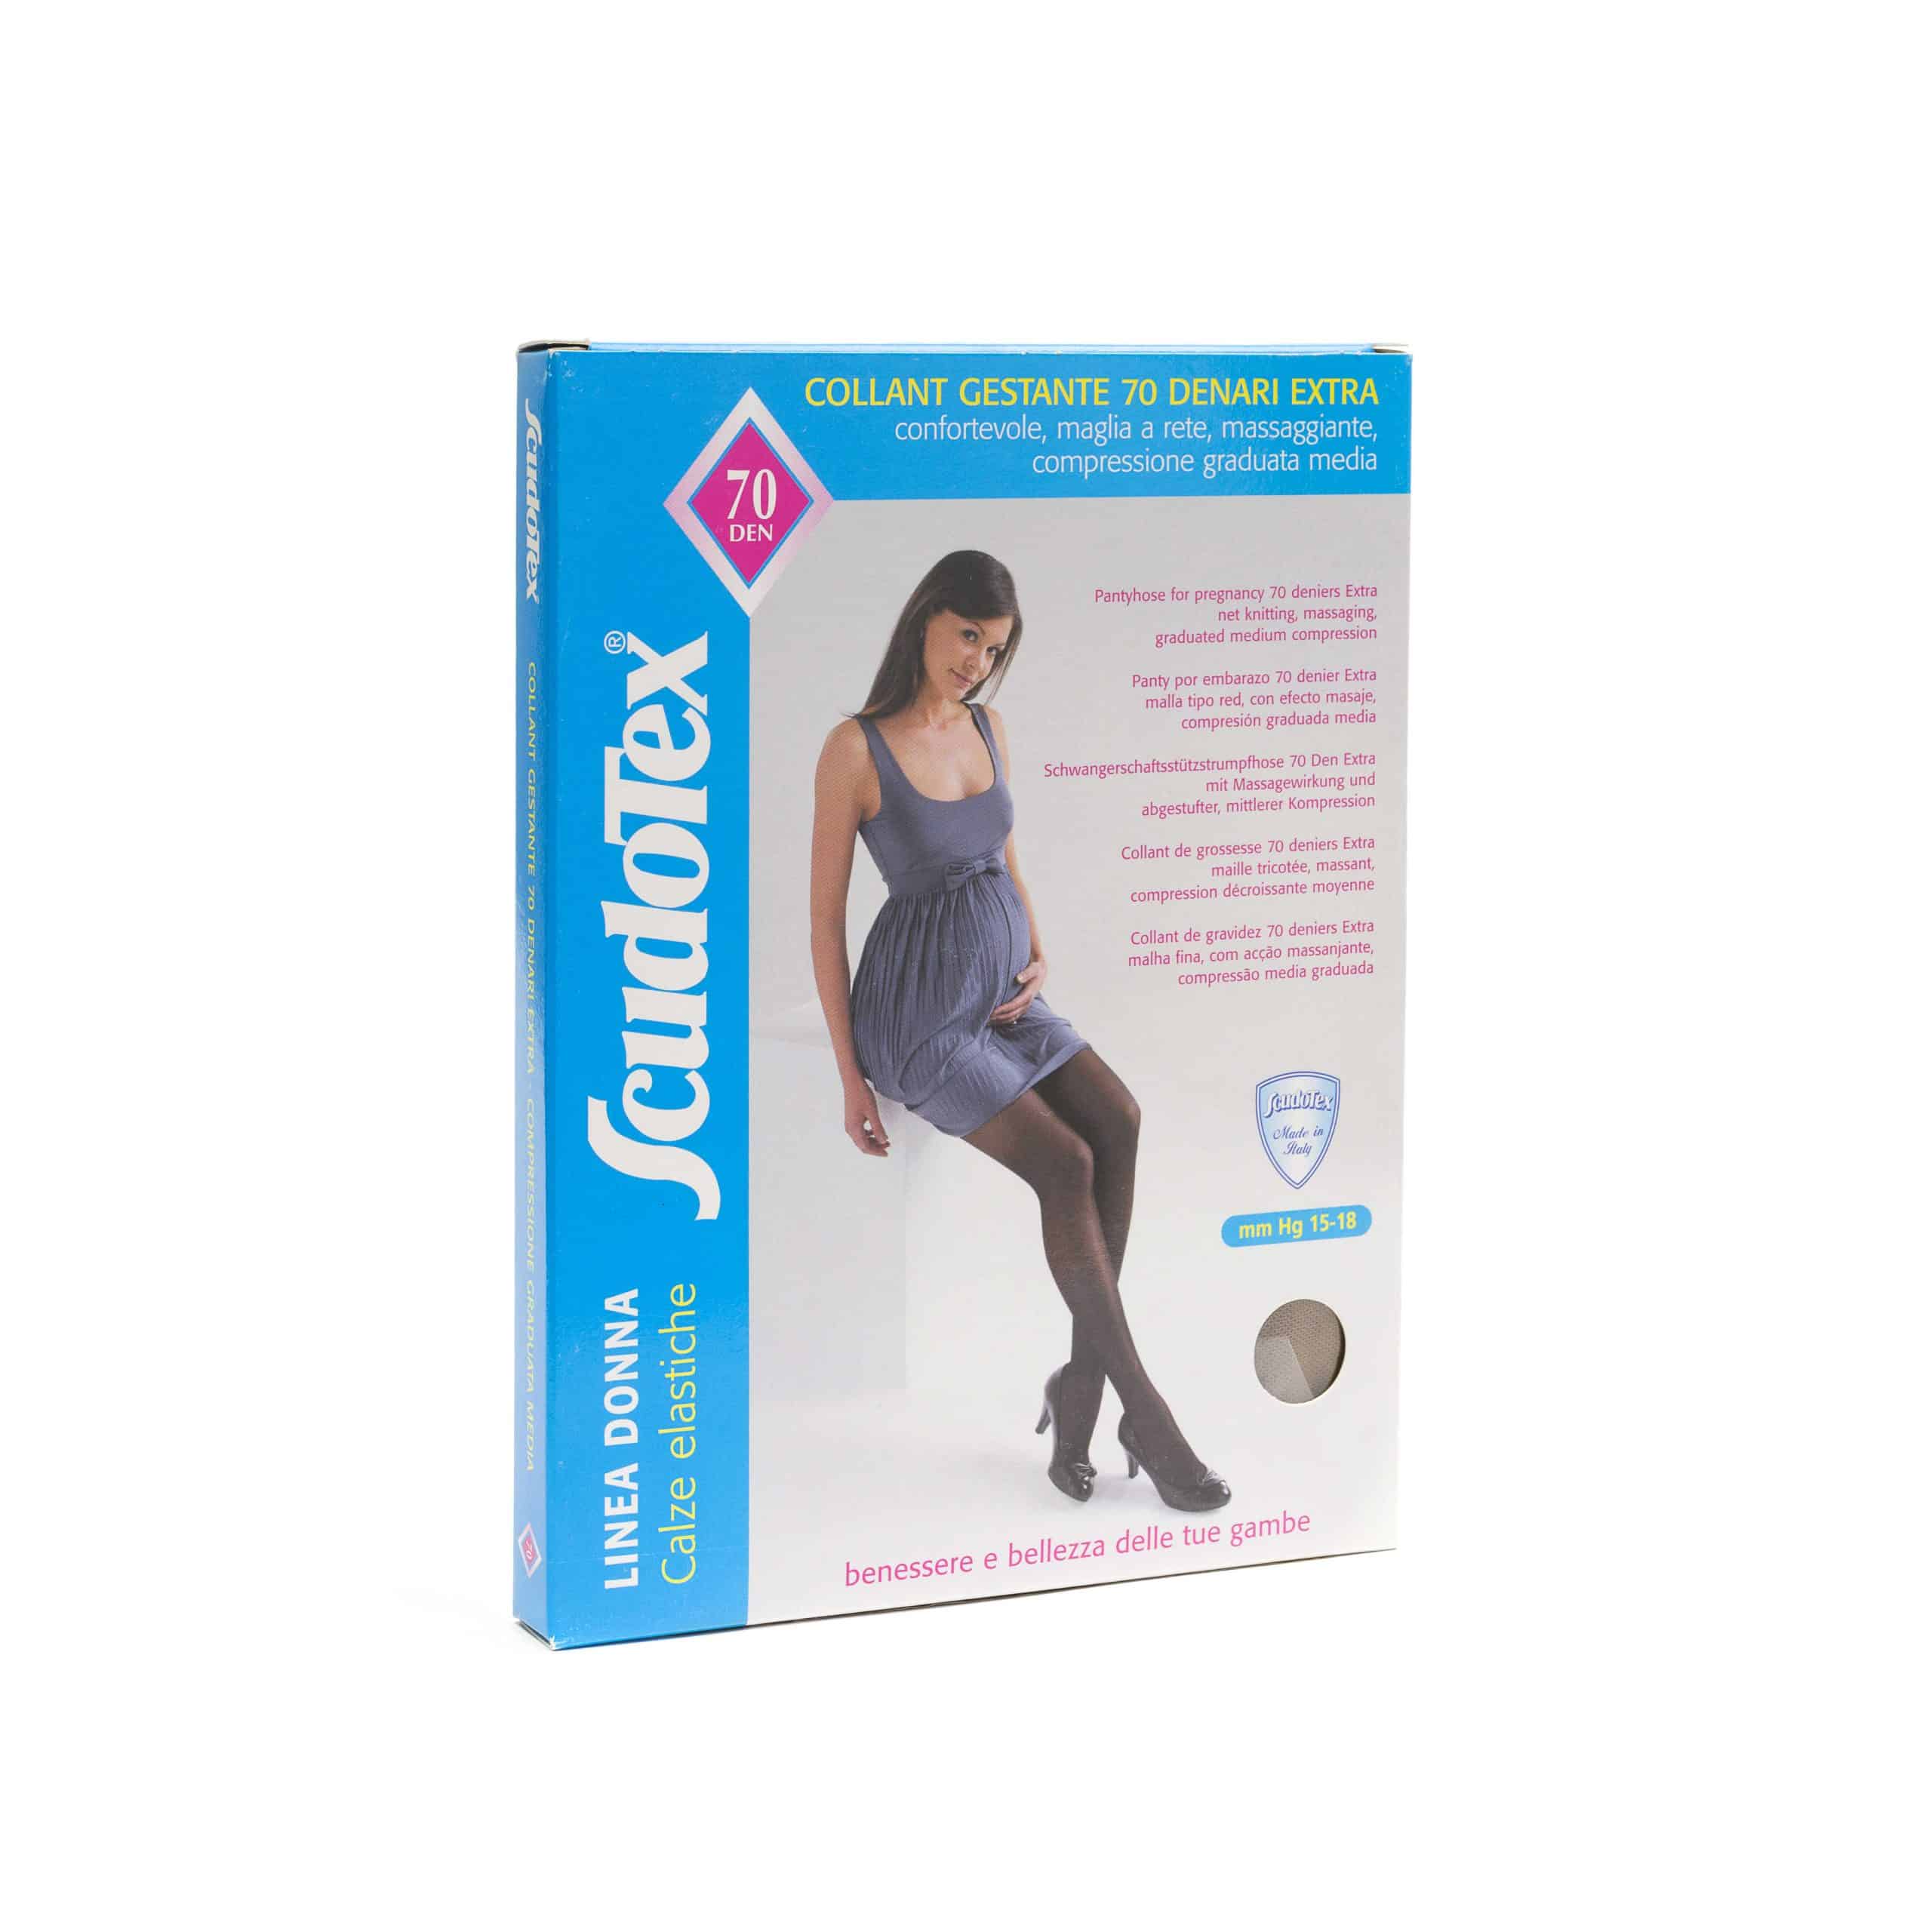 Ciorapi de la sarcina în varicoză - La femeile gravide, venele picioarelor stau sub presiune